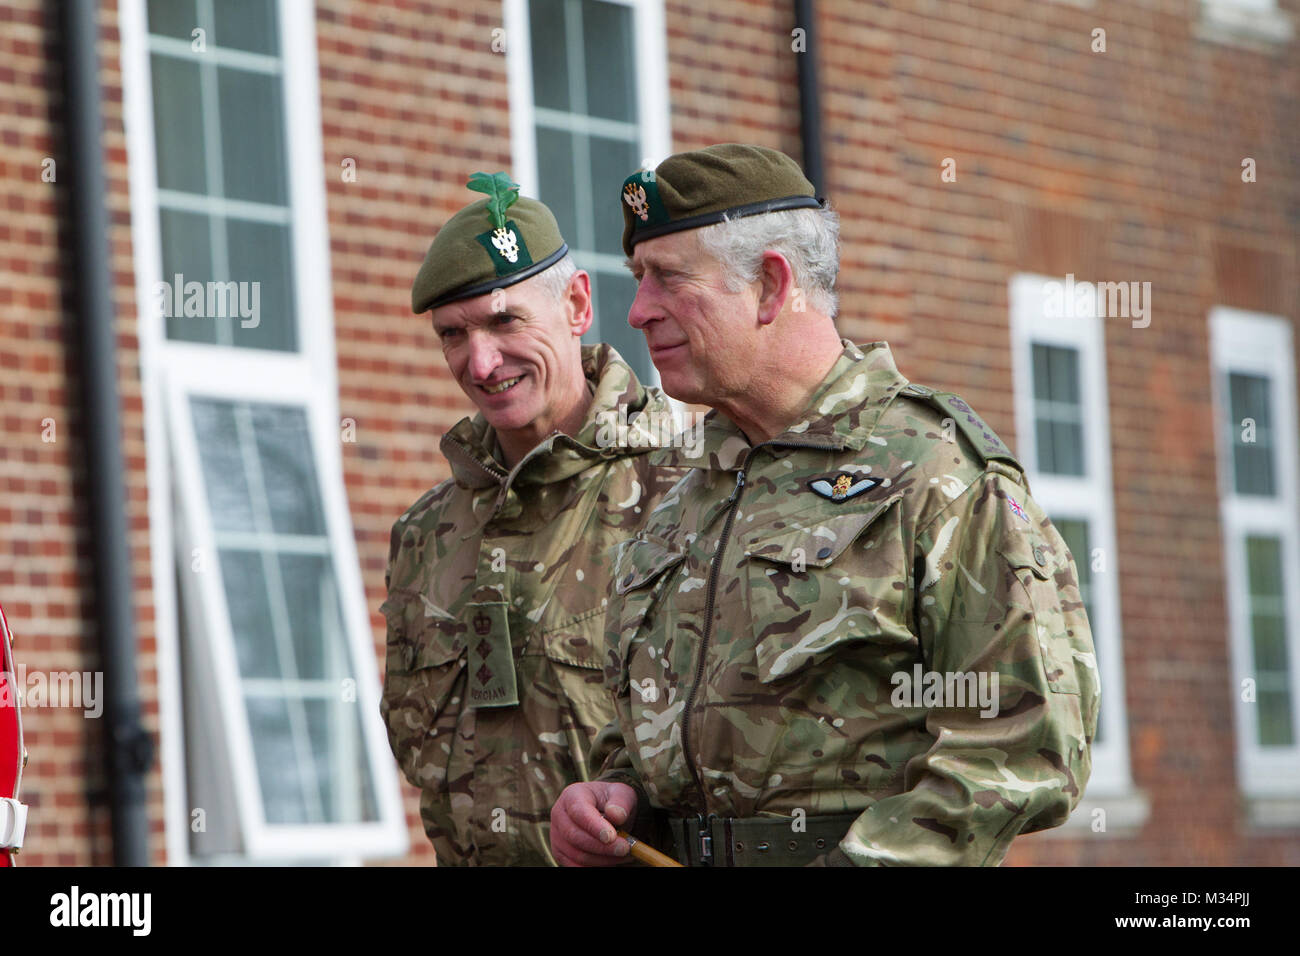 Prince Charles (King Charles III) visits Bulford Stock Photo